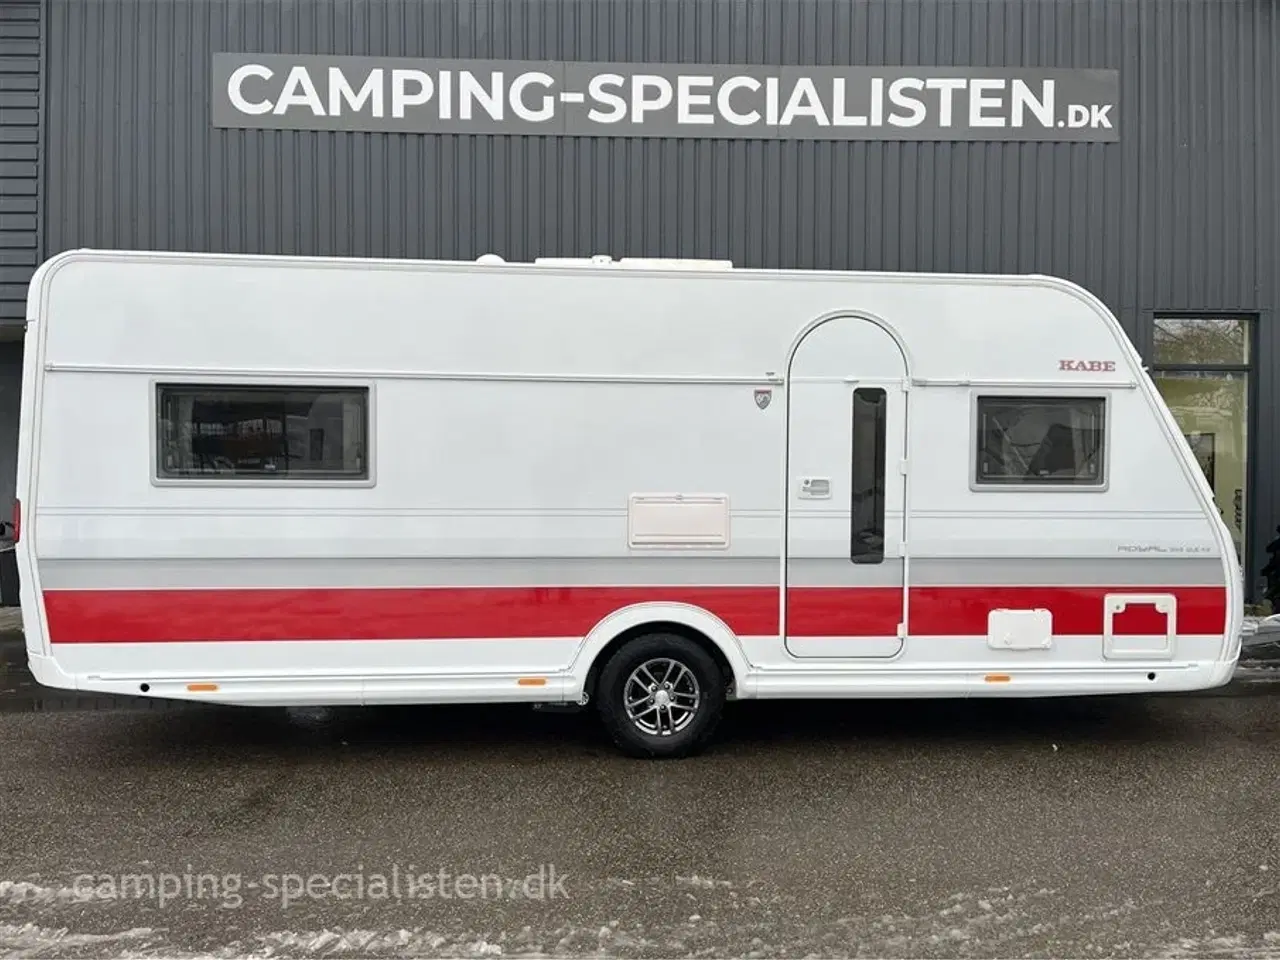 Billede 1 - 2018 - Kabe Royal 560 GLE KS   Kabe Royal 560 GLE KS 2018 - masser af udstyr! - kan nu ses hos Camping-Specialisten.dk